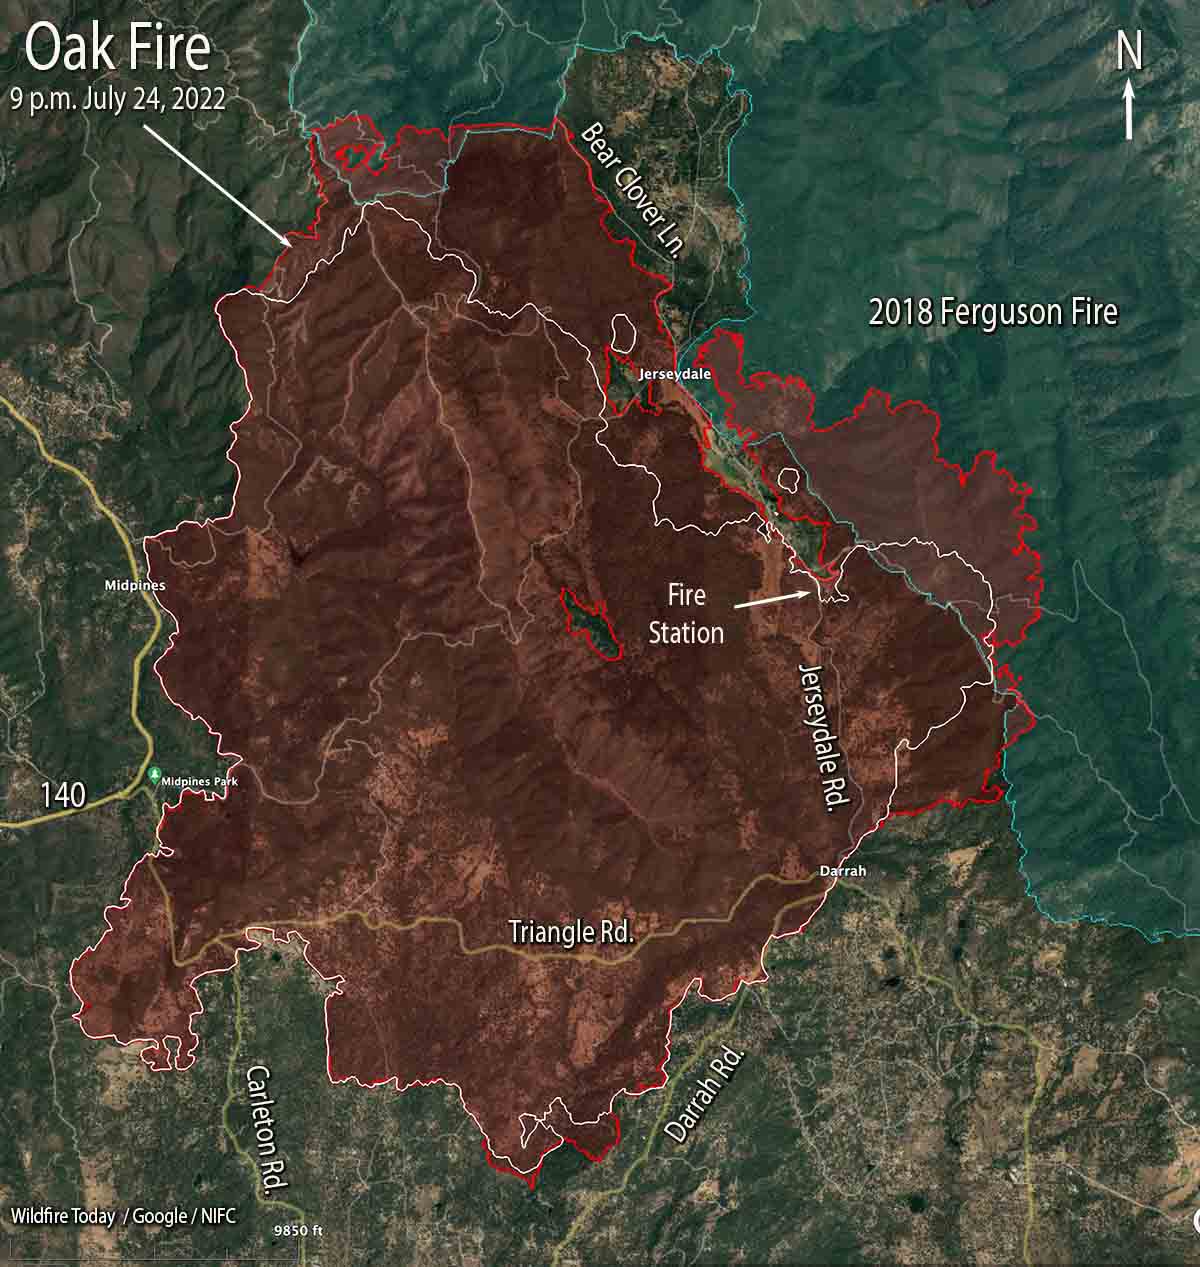 Oak Fire map 9 p.m. July 24, 2022